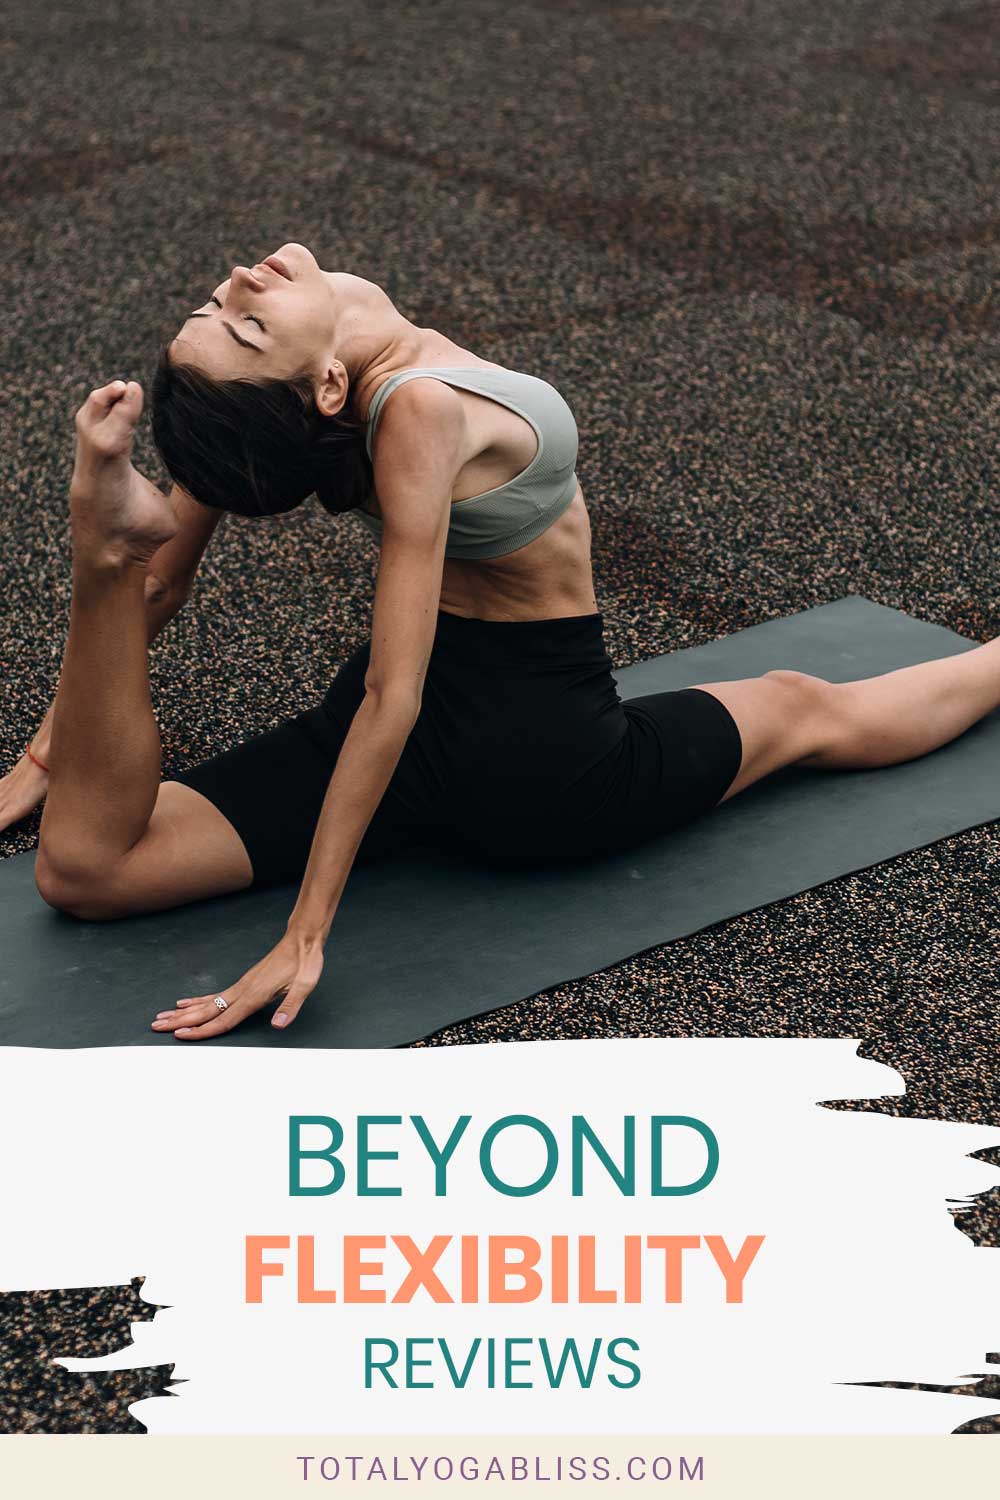 Woman doing a split on a black yoga mat - Beyond Flexibility Reviews.